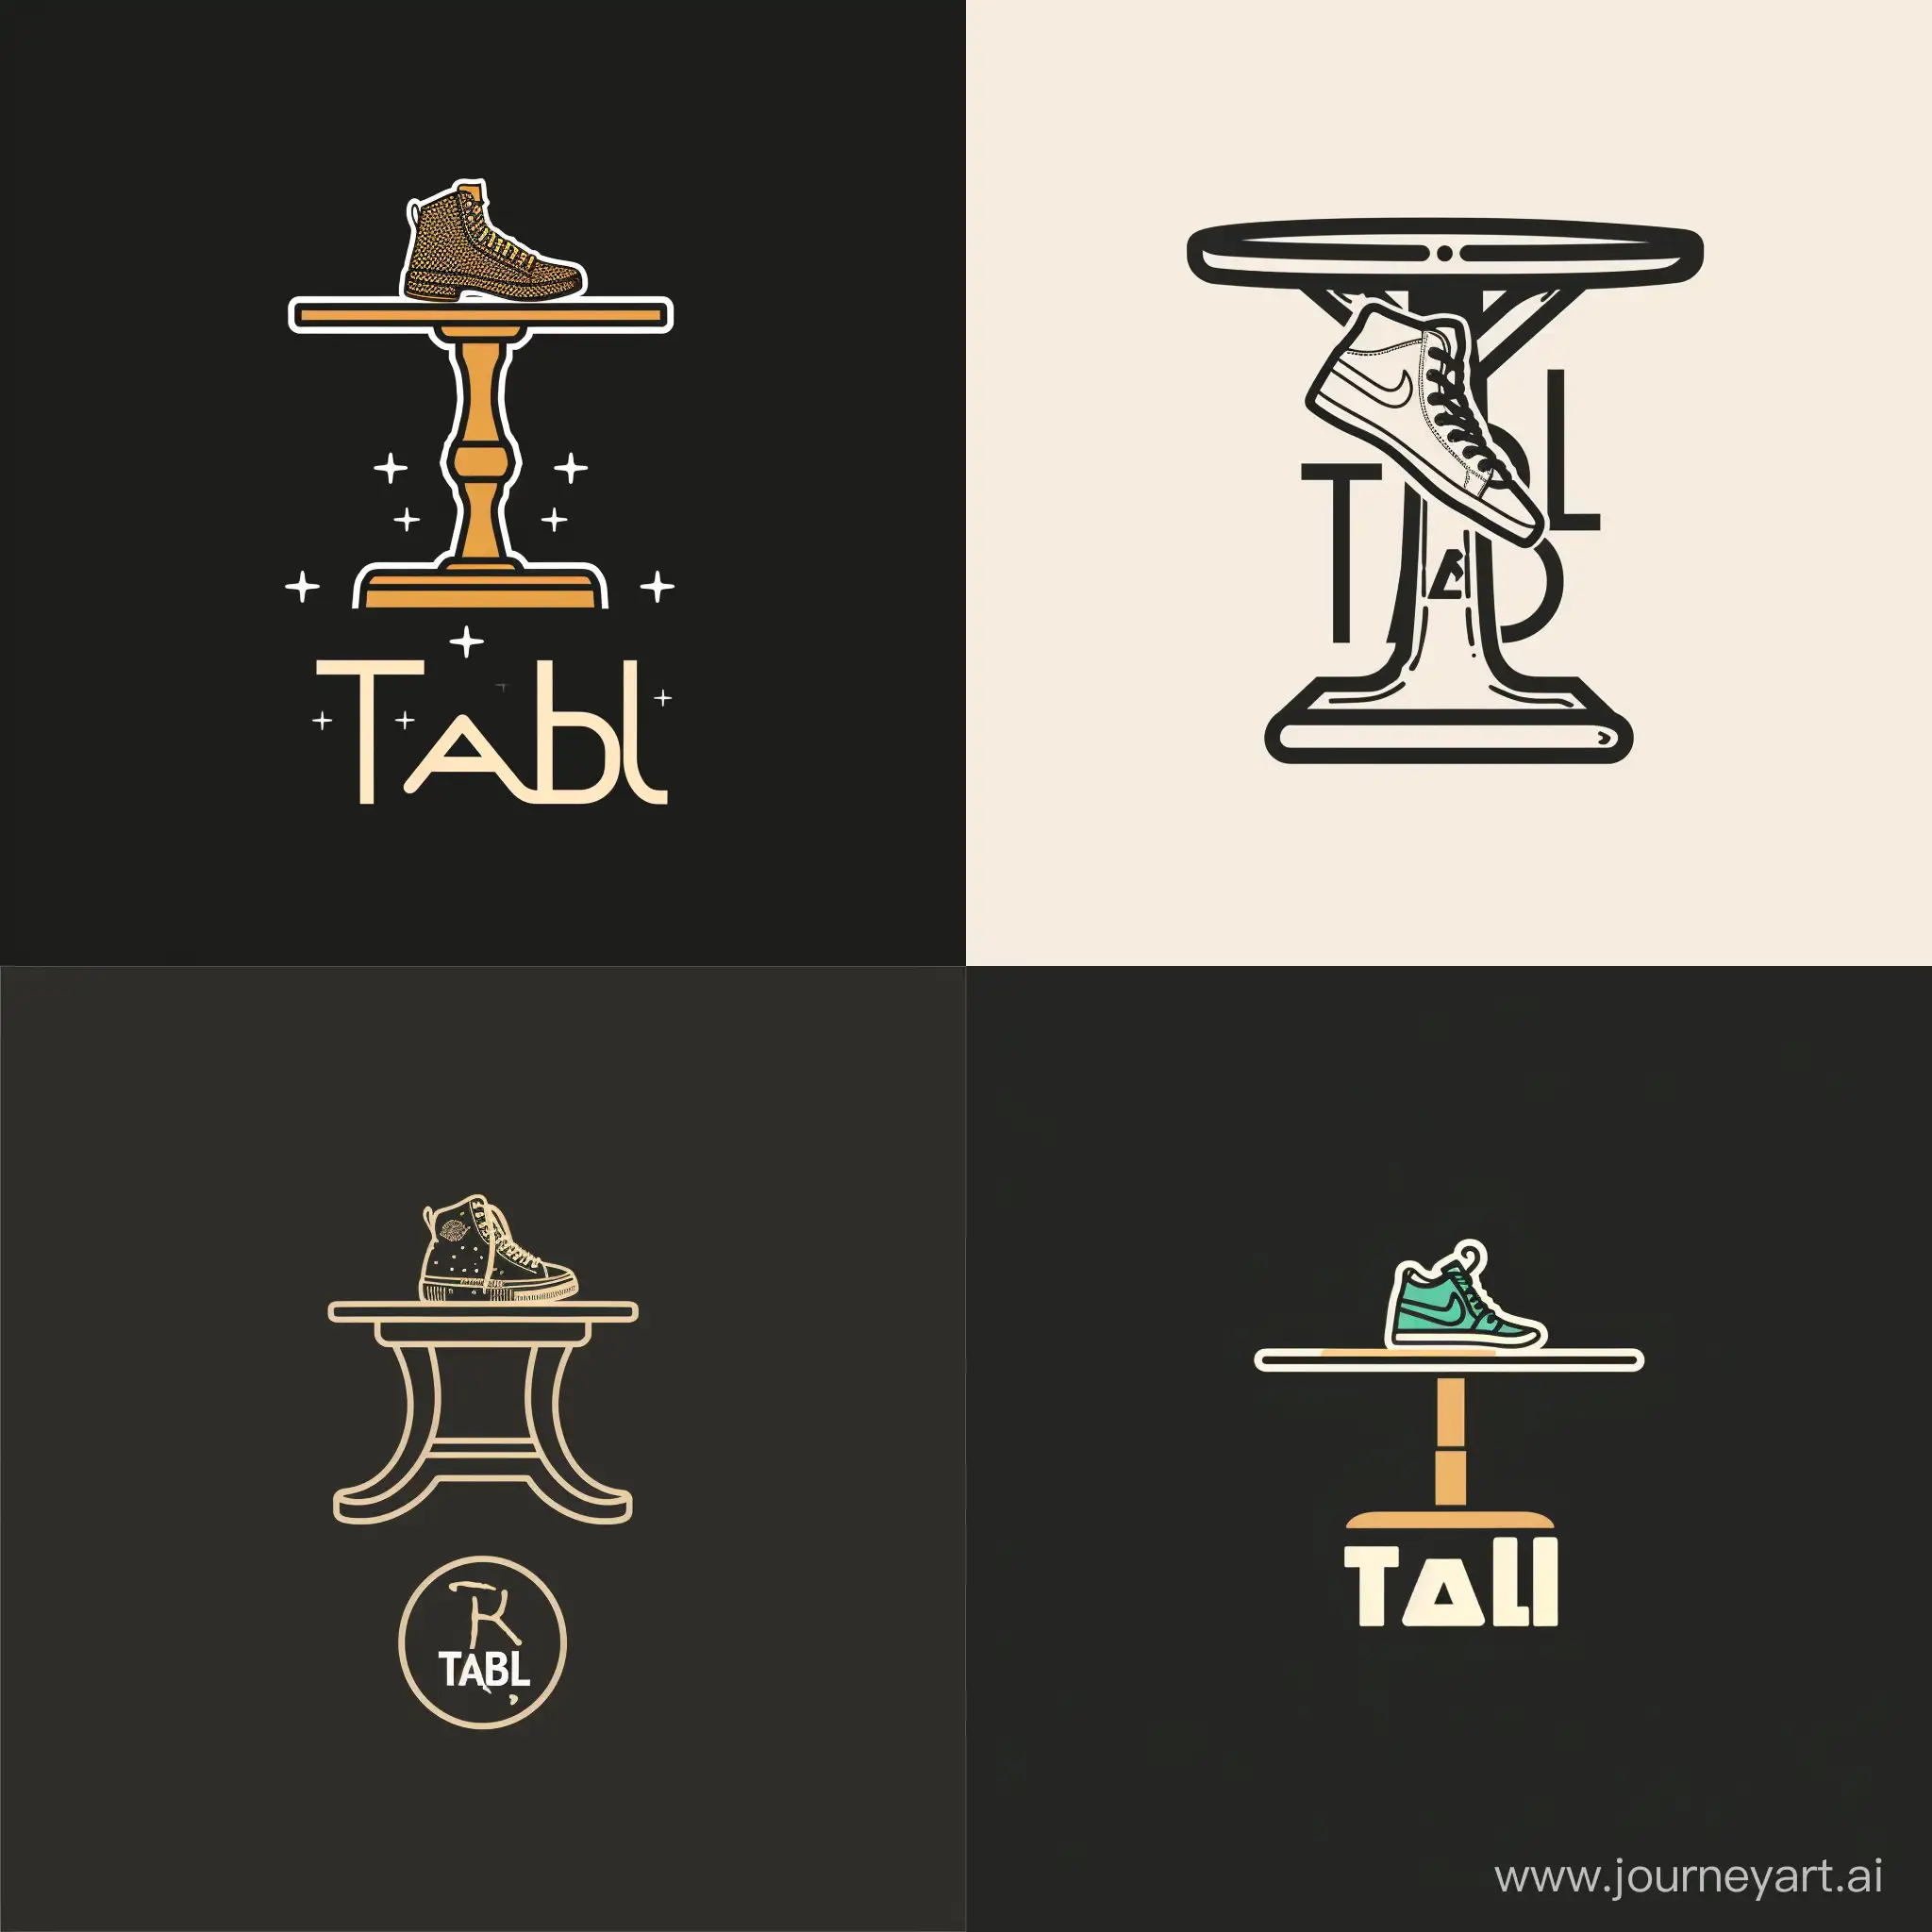 Создай логотип для магазина, чтобы было совмещено таблица и кроссовки, так как название магазина Tabl style
